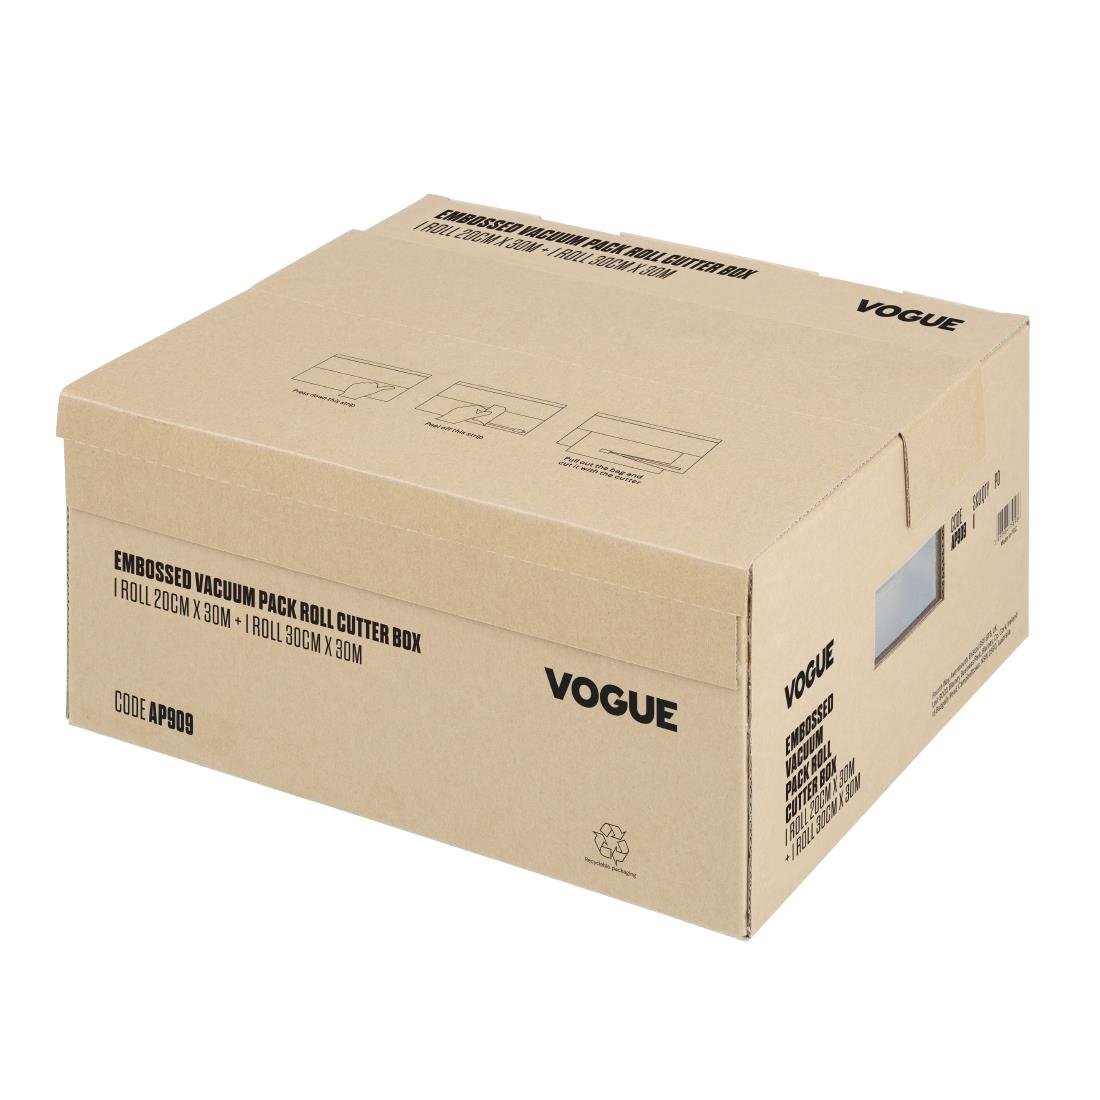 Vogue vacuümverpakkingsrol met snijdoos (reliëf) 200 mm en 300 mm dubbelverpakking